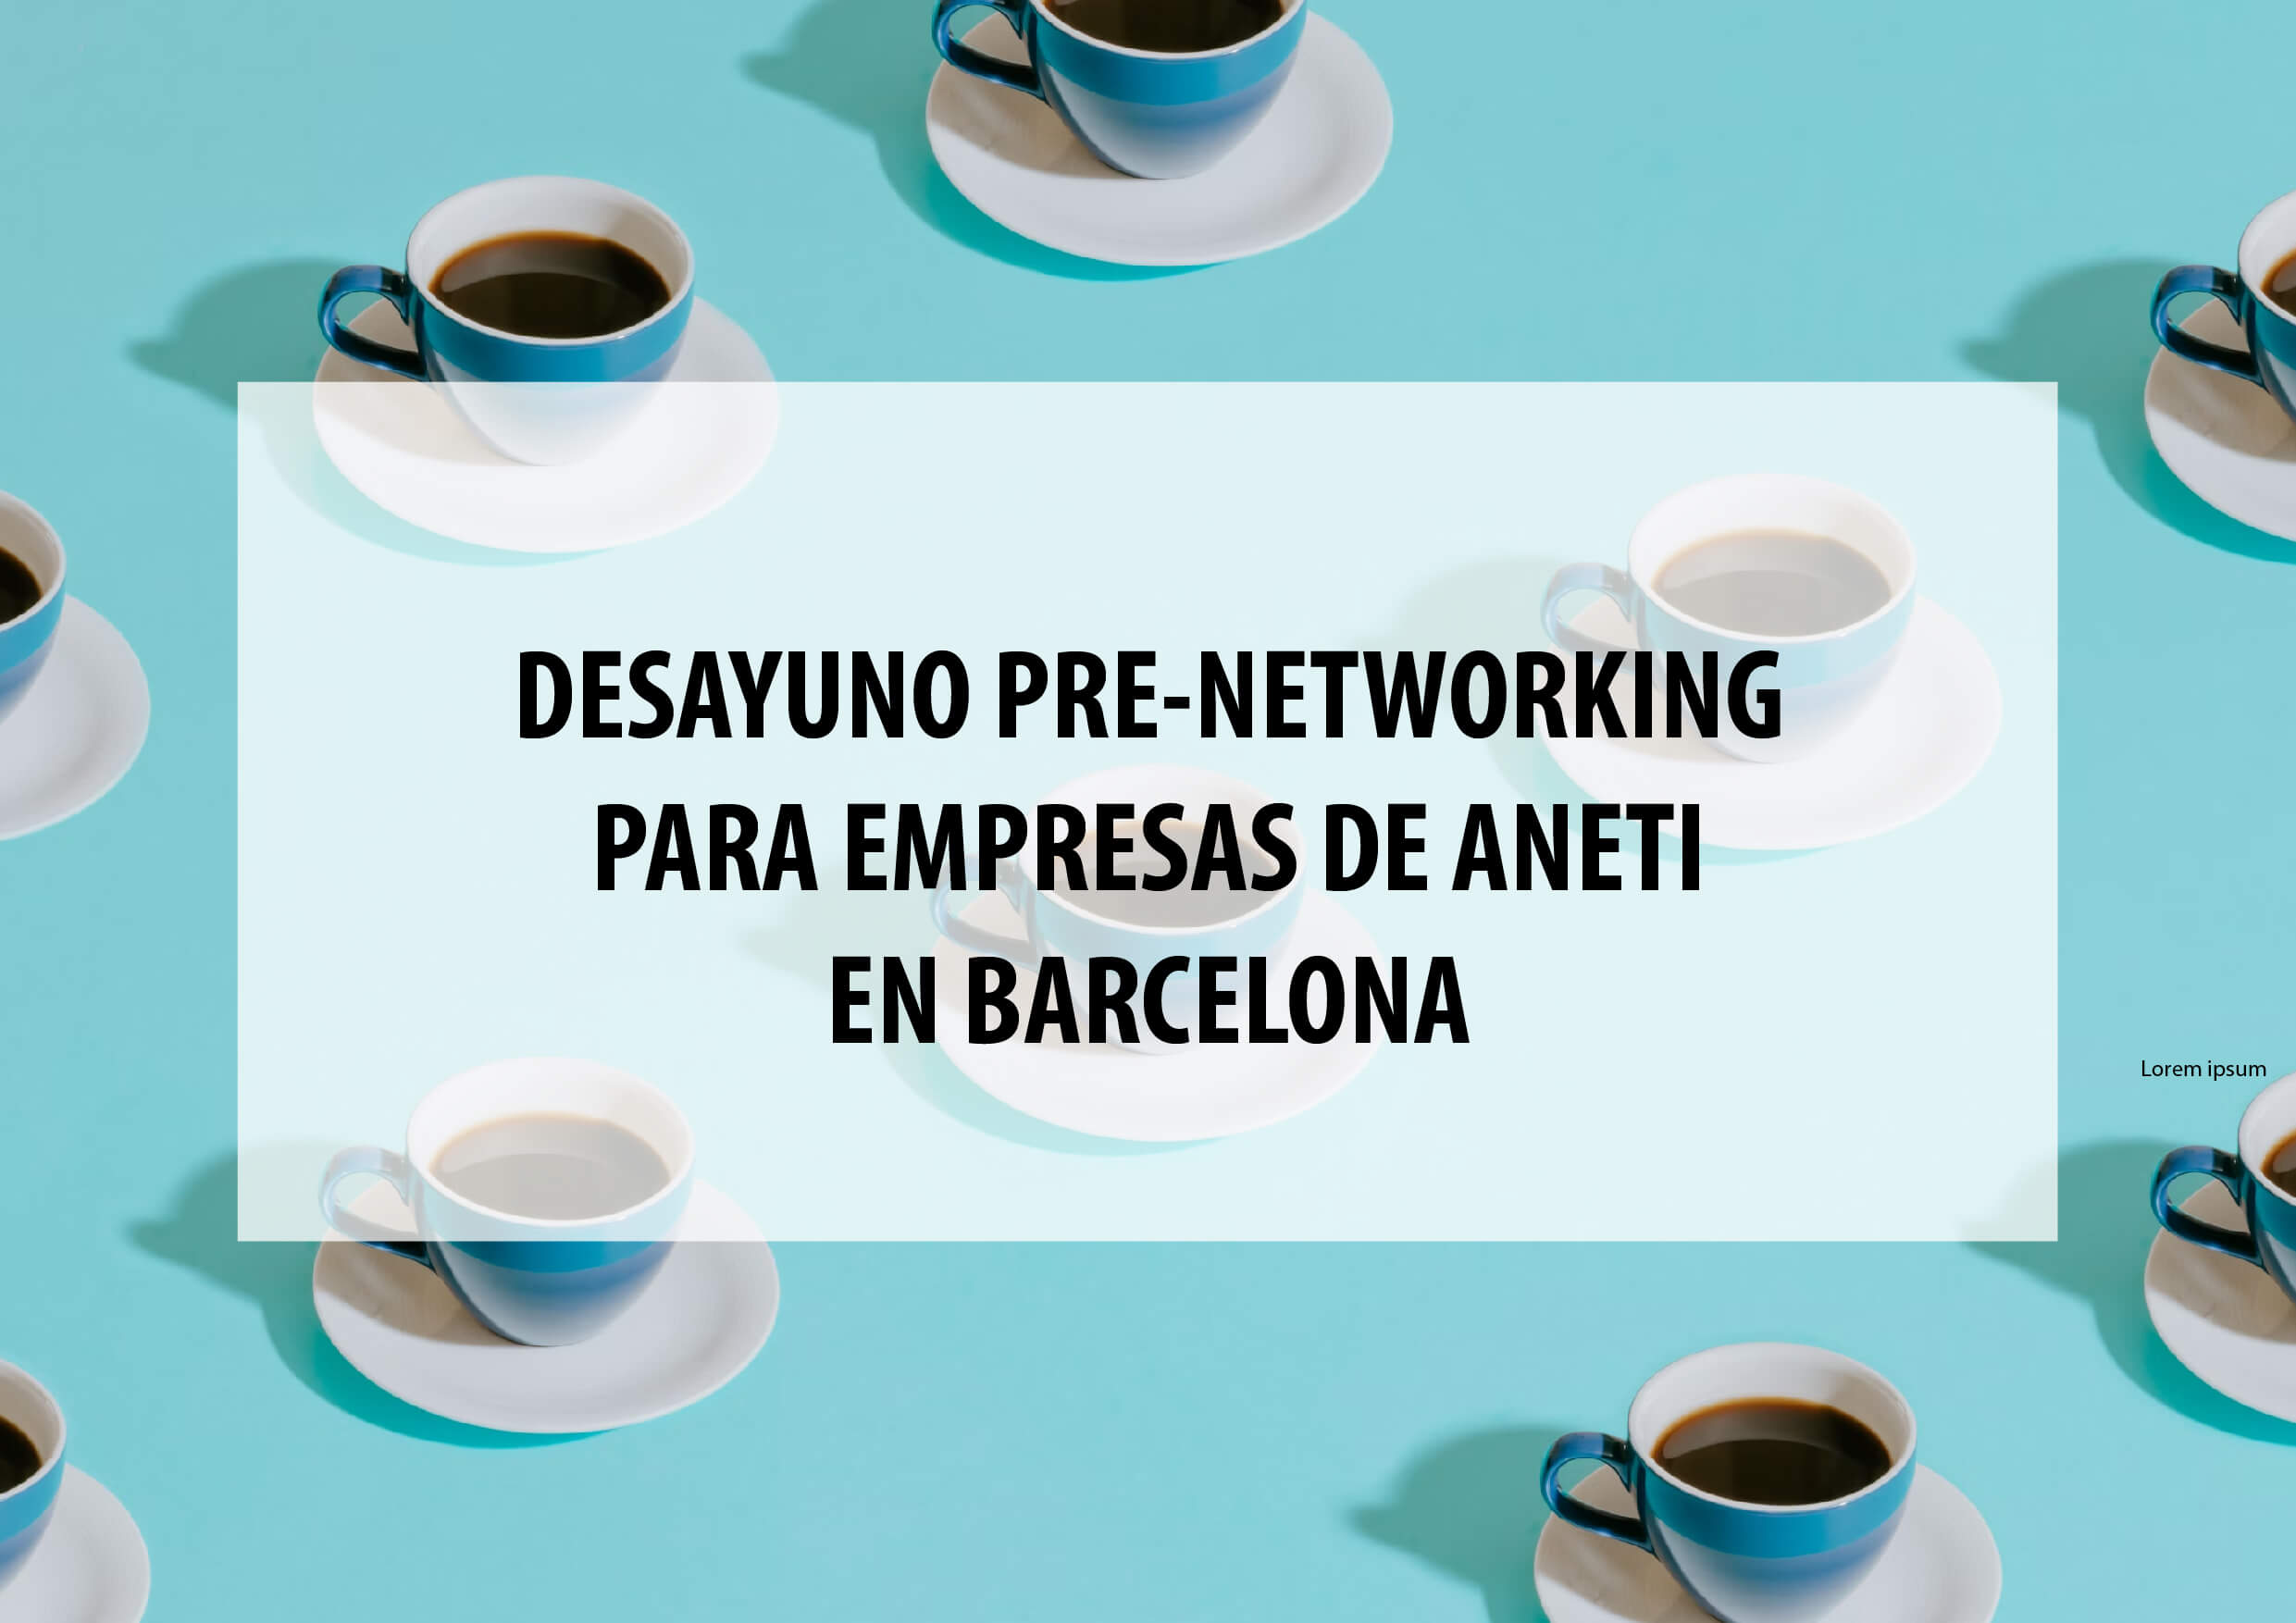 Desayuno pre-networking para empresas de ANETI en Barcelona